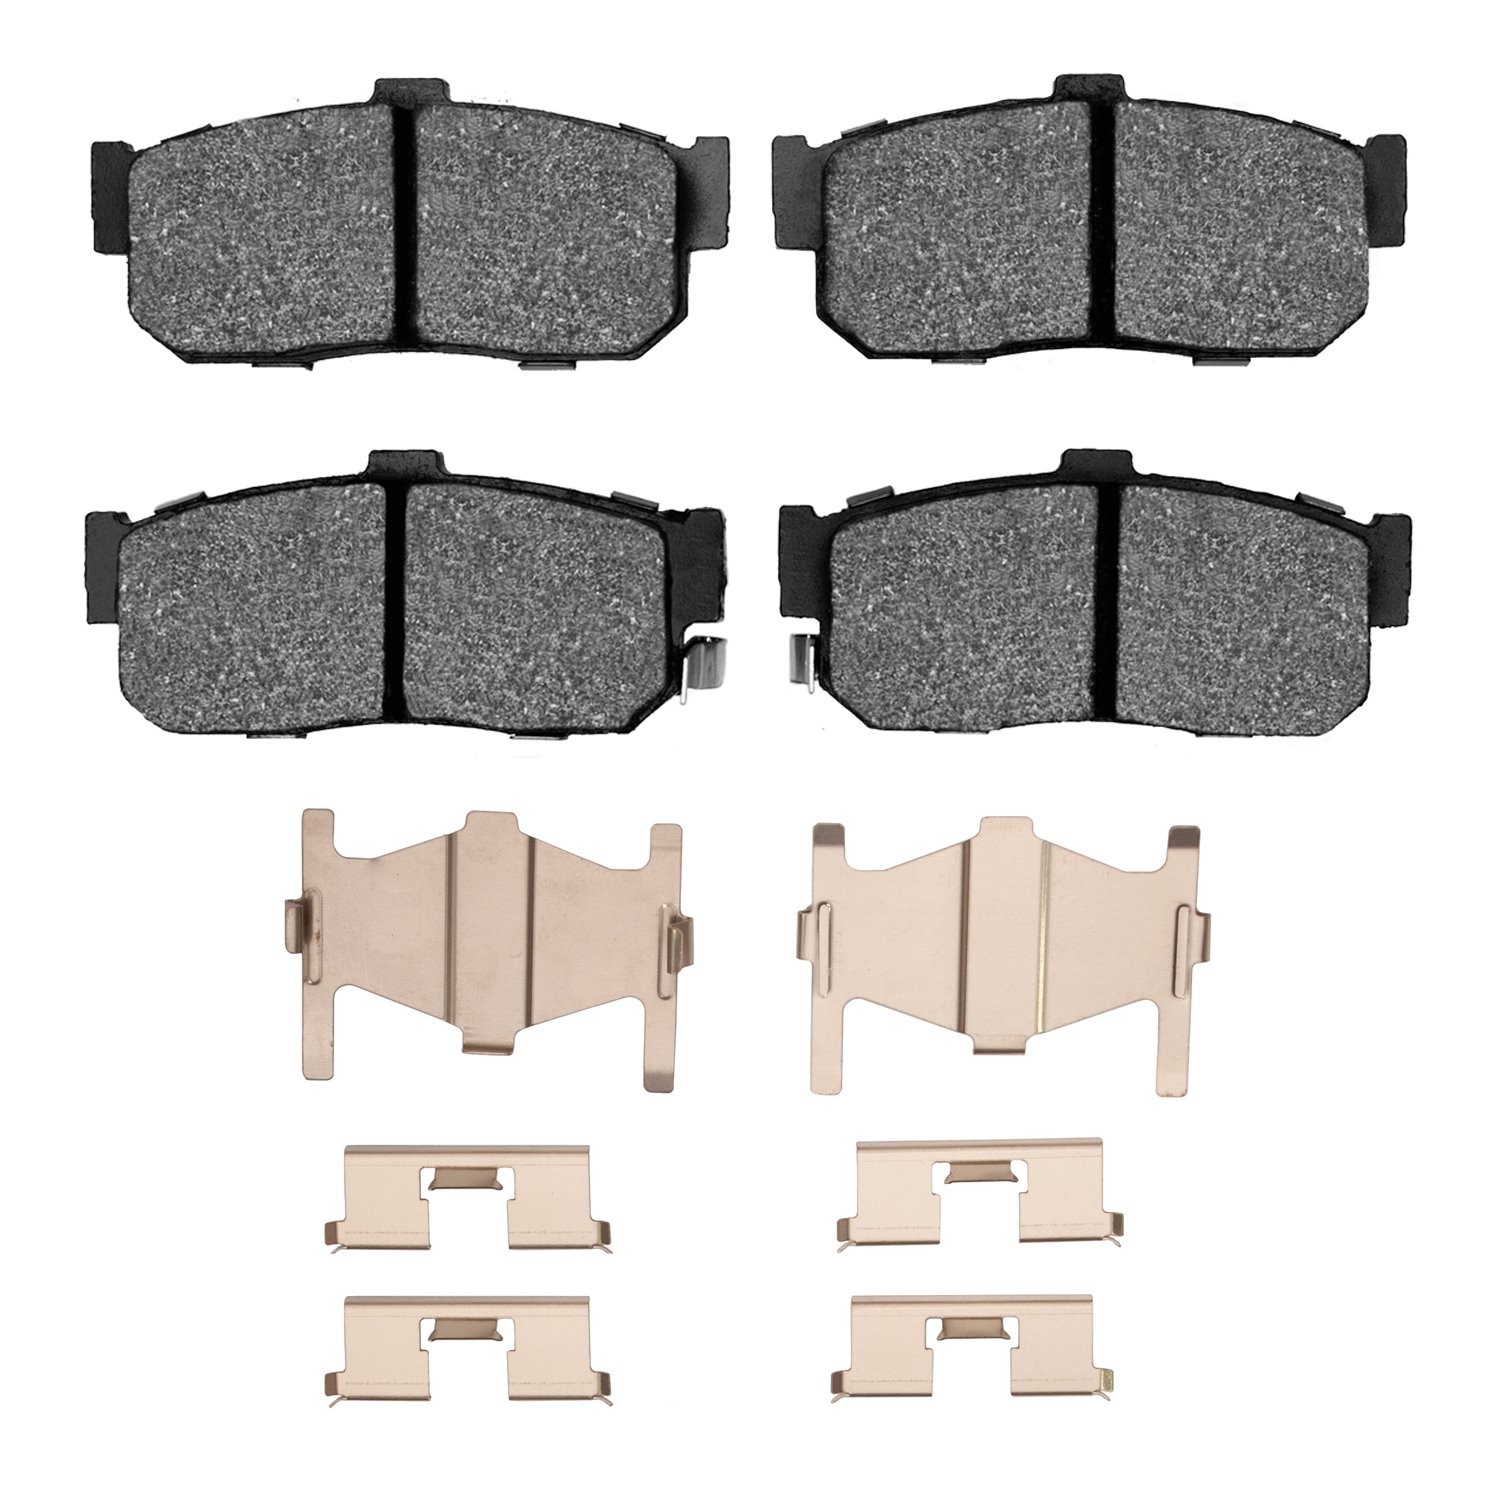 1310-0540-01 3000-Series Ceramic Brake Pads & Hardware Kit, 1991-2001 Infiniti/Nissan, Position: Rear